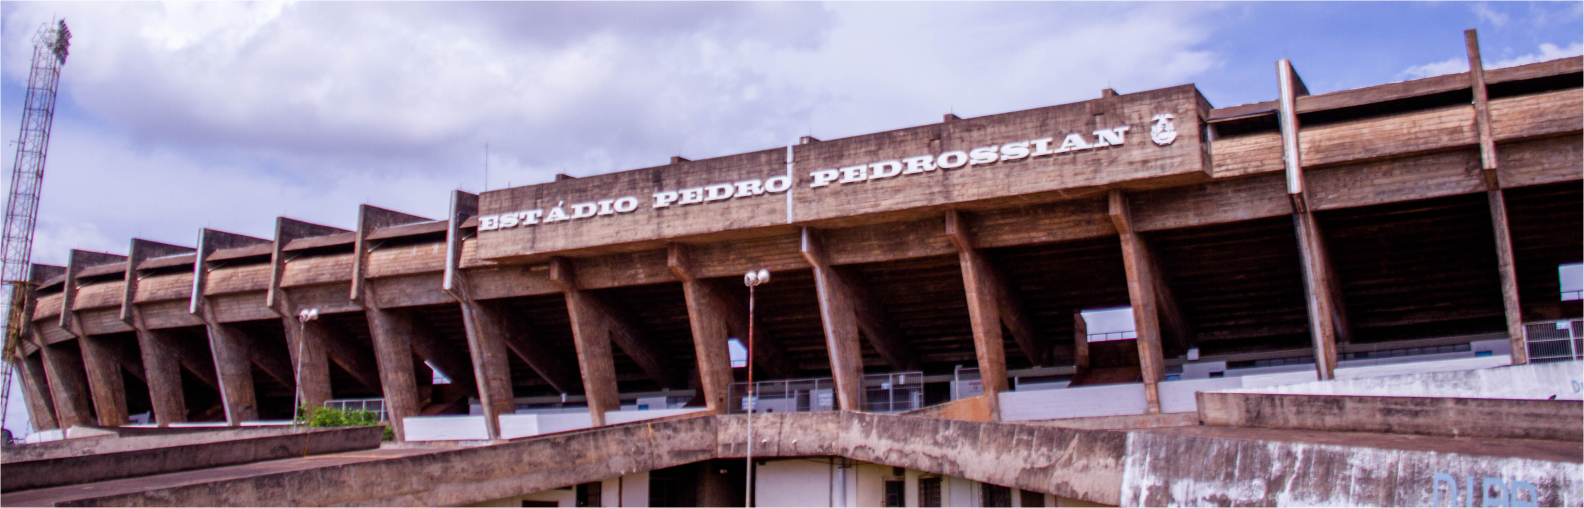 Imagem com a fachada do estádio Morenão.